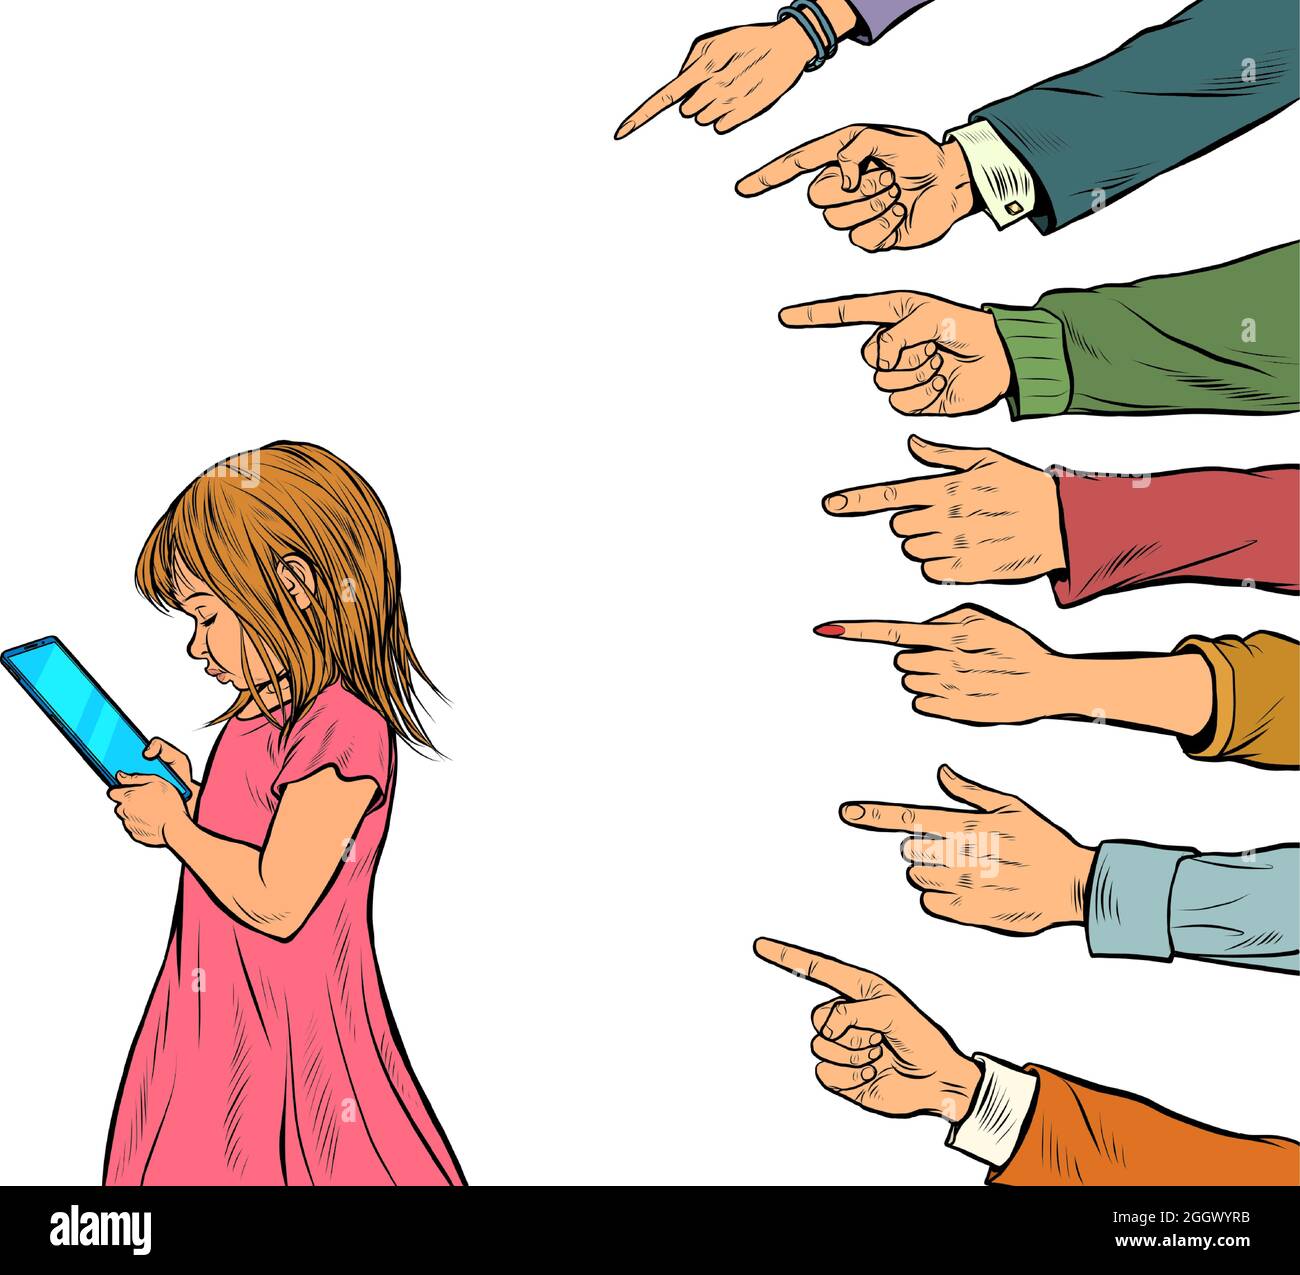 Ein kleines Mädchen nutzt ein Smartphone. Erwachsene diskutieren über die Leidenschaft junger Menschen. Generationskonflikt isoliert auf weißem Hintergrund Stock Vektor